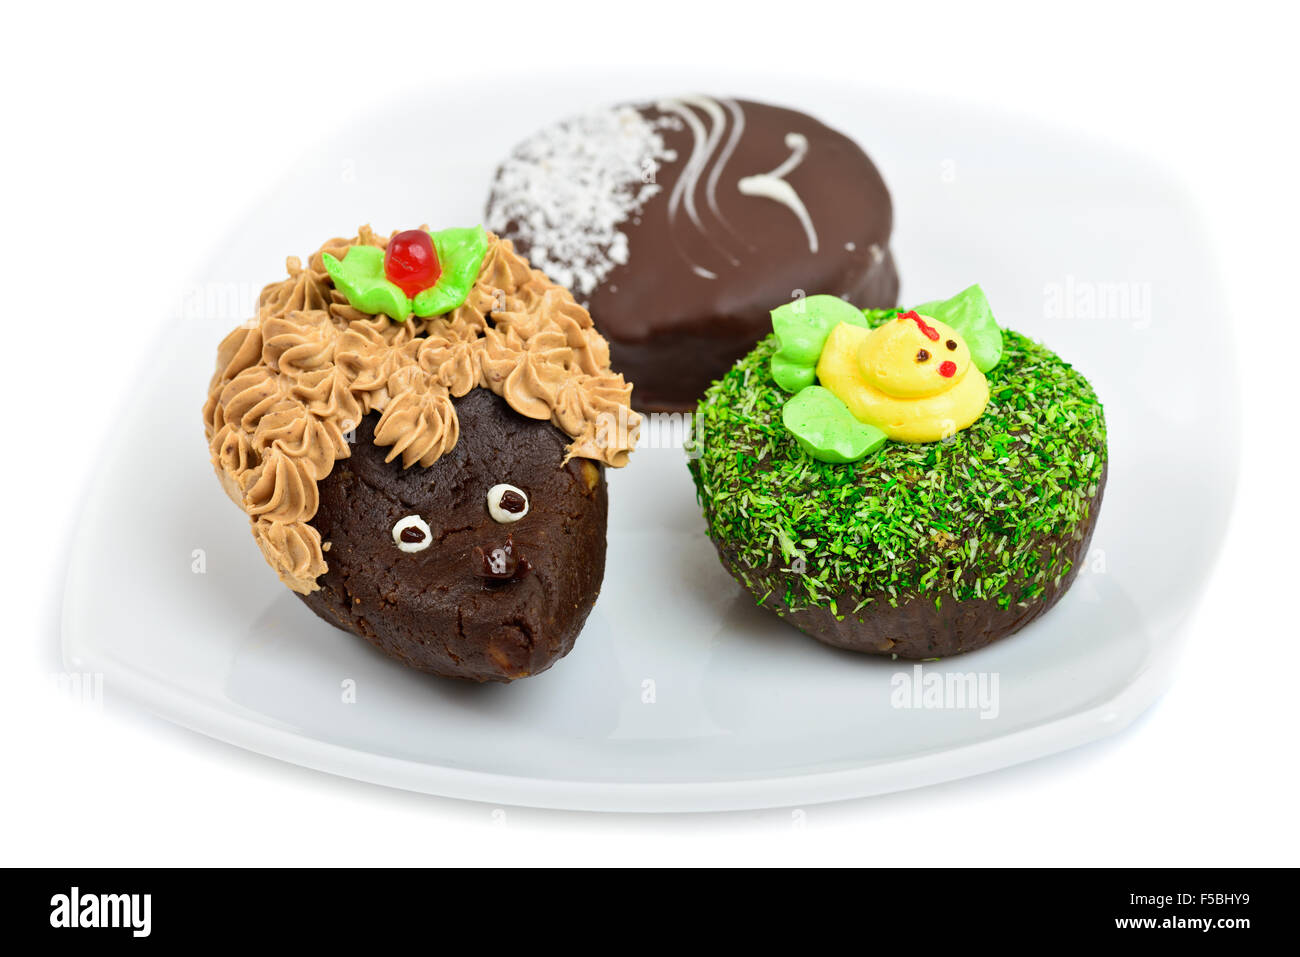 Artistiche torte al cioccolato decorato come un riccio, anatra e seagull Foto Stock